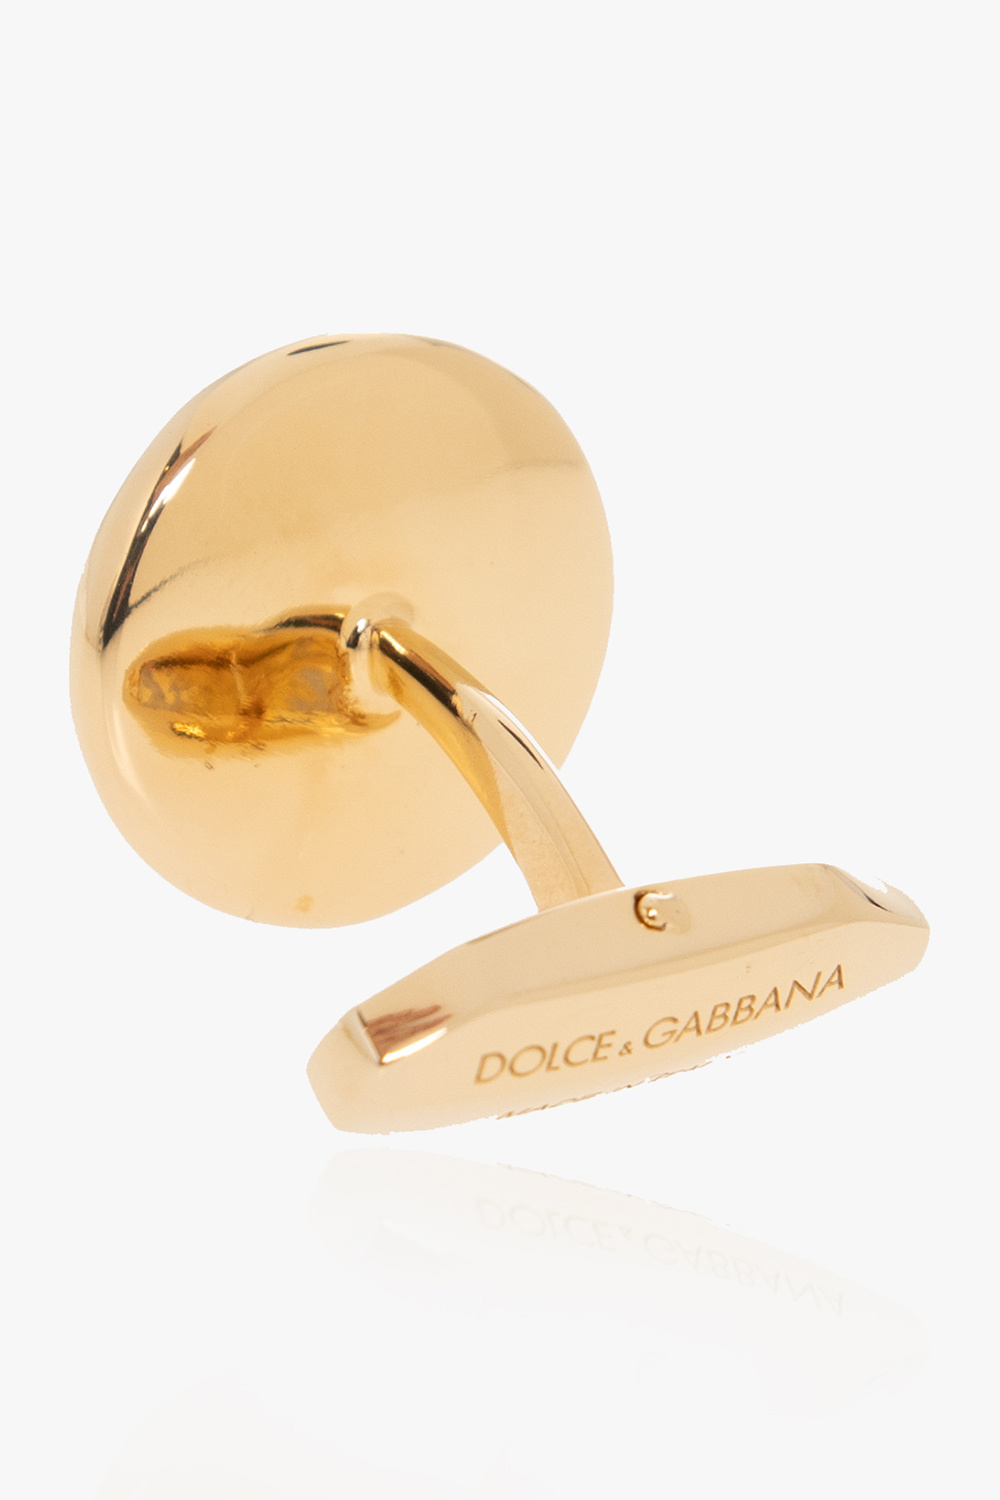 Dolce & Gabbana Dolce & Gabbana logo-waistband stretch briefs